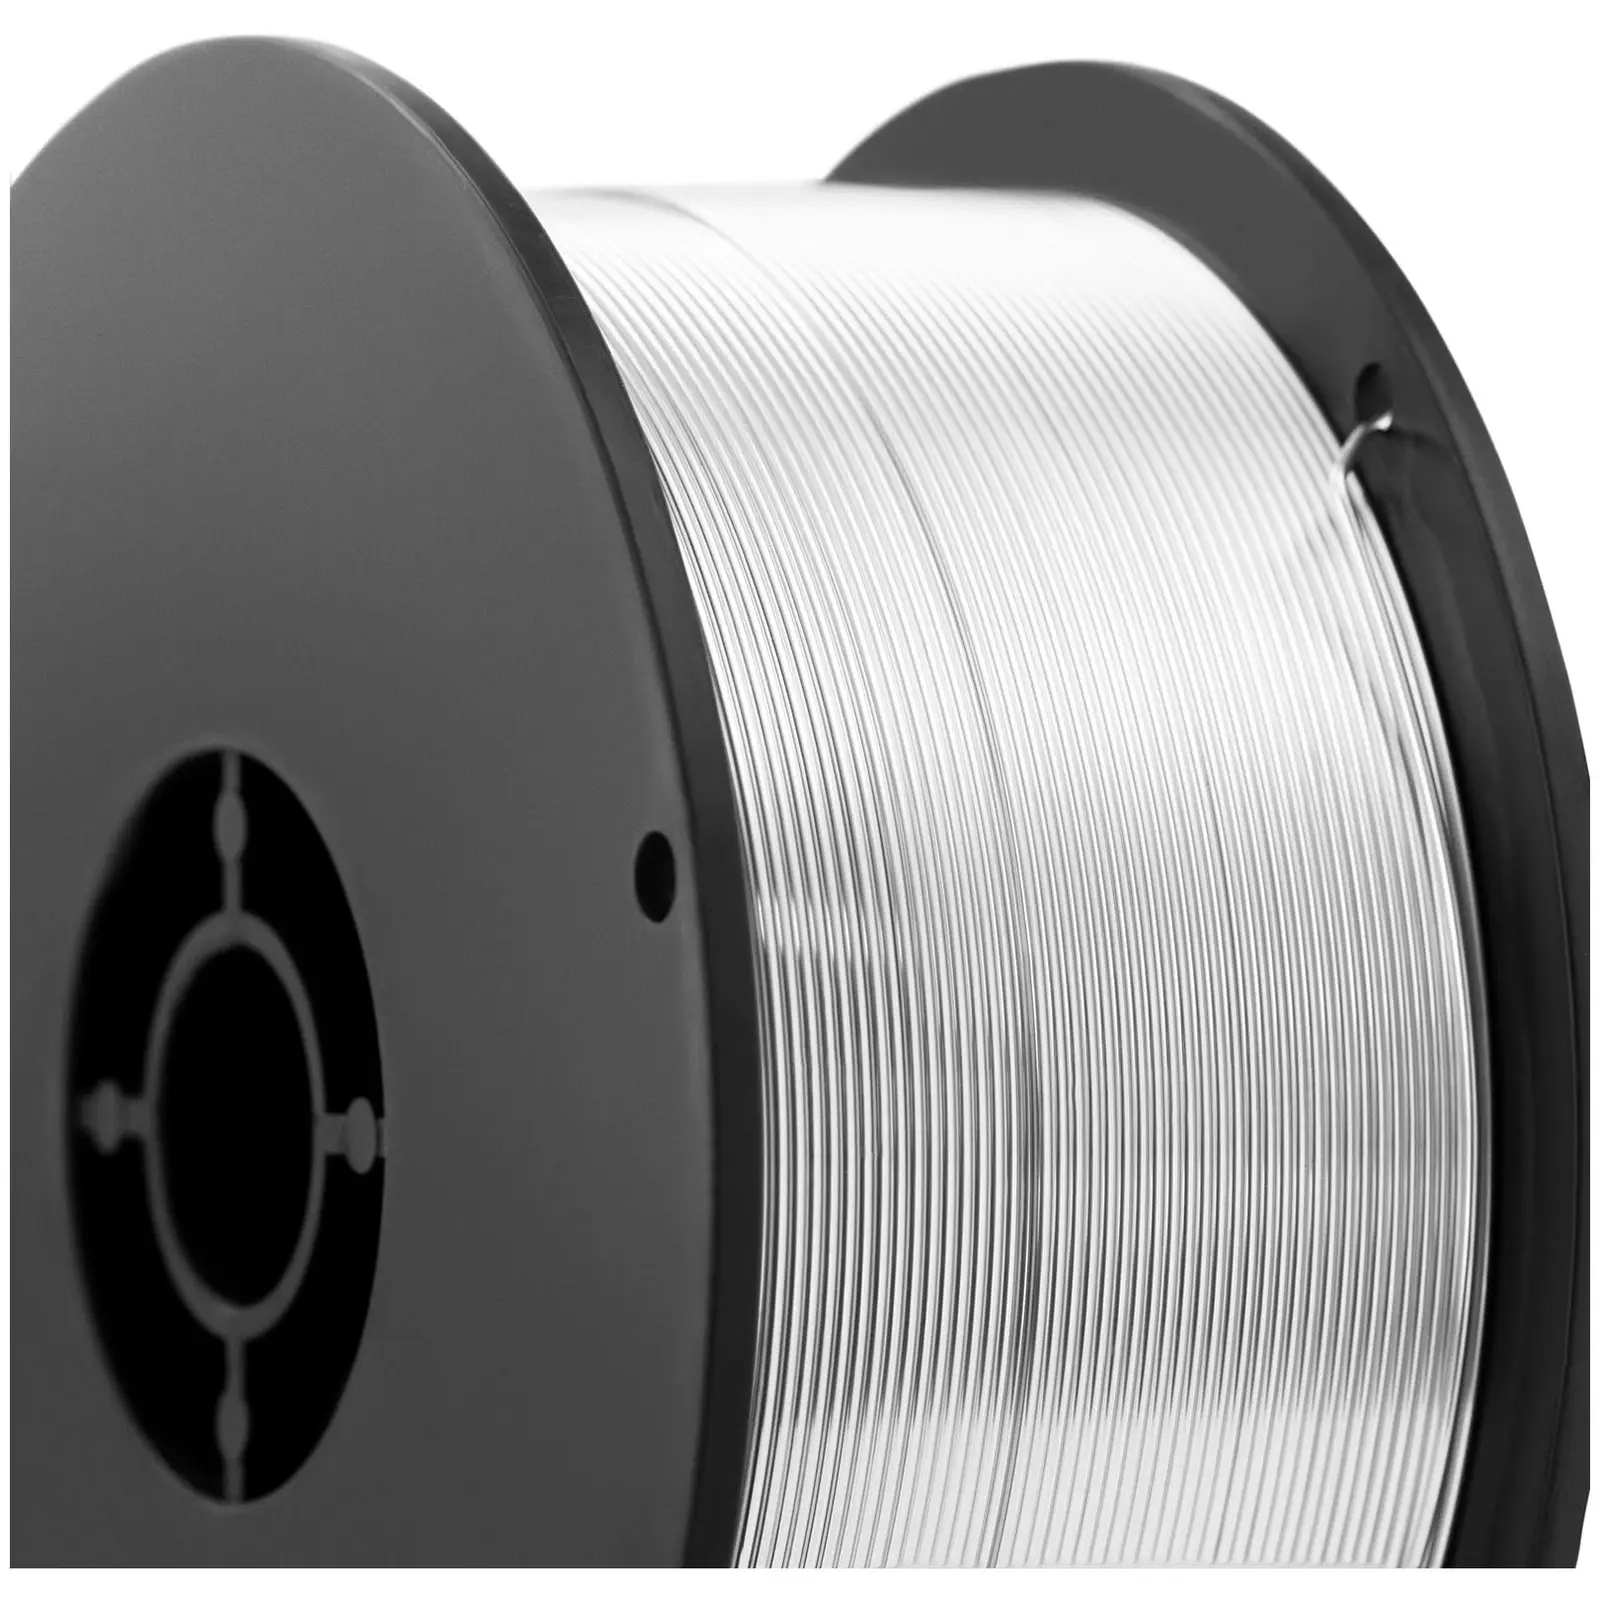 Varilna žica - aluminijeva zlitina - ER4043 - 0.8 mm - 0.5 kg